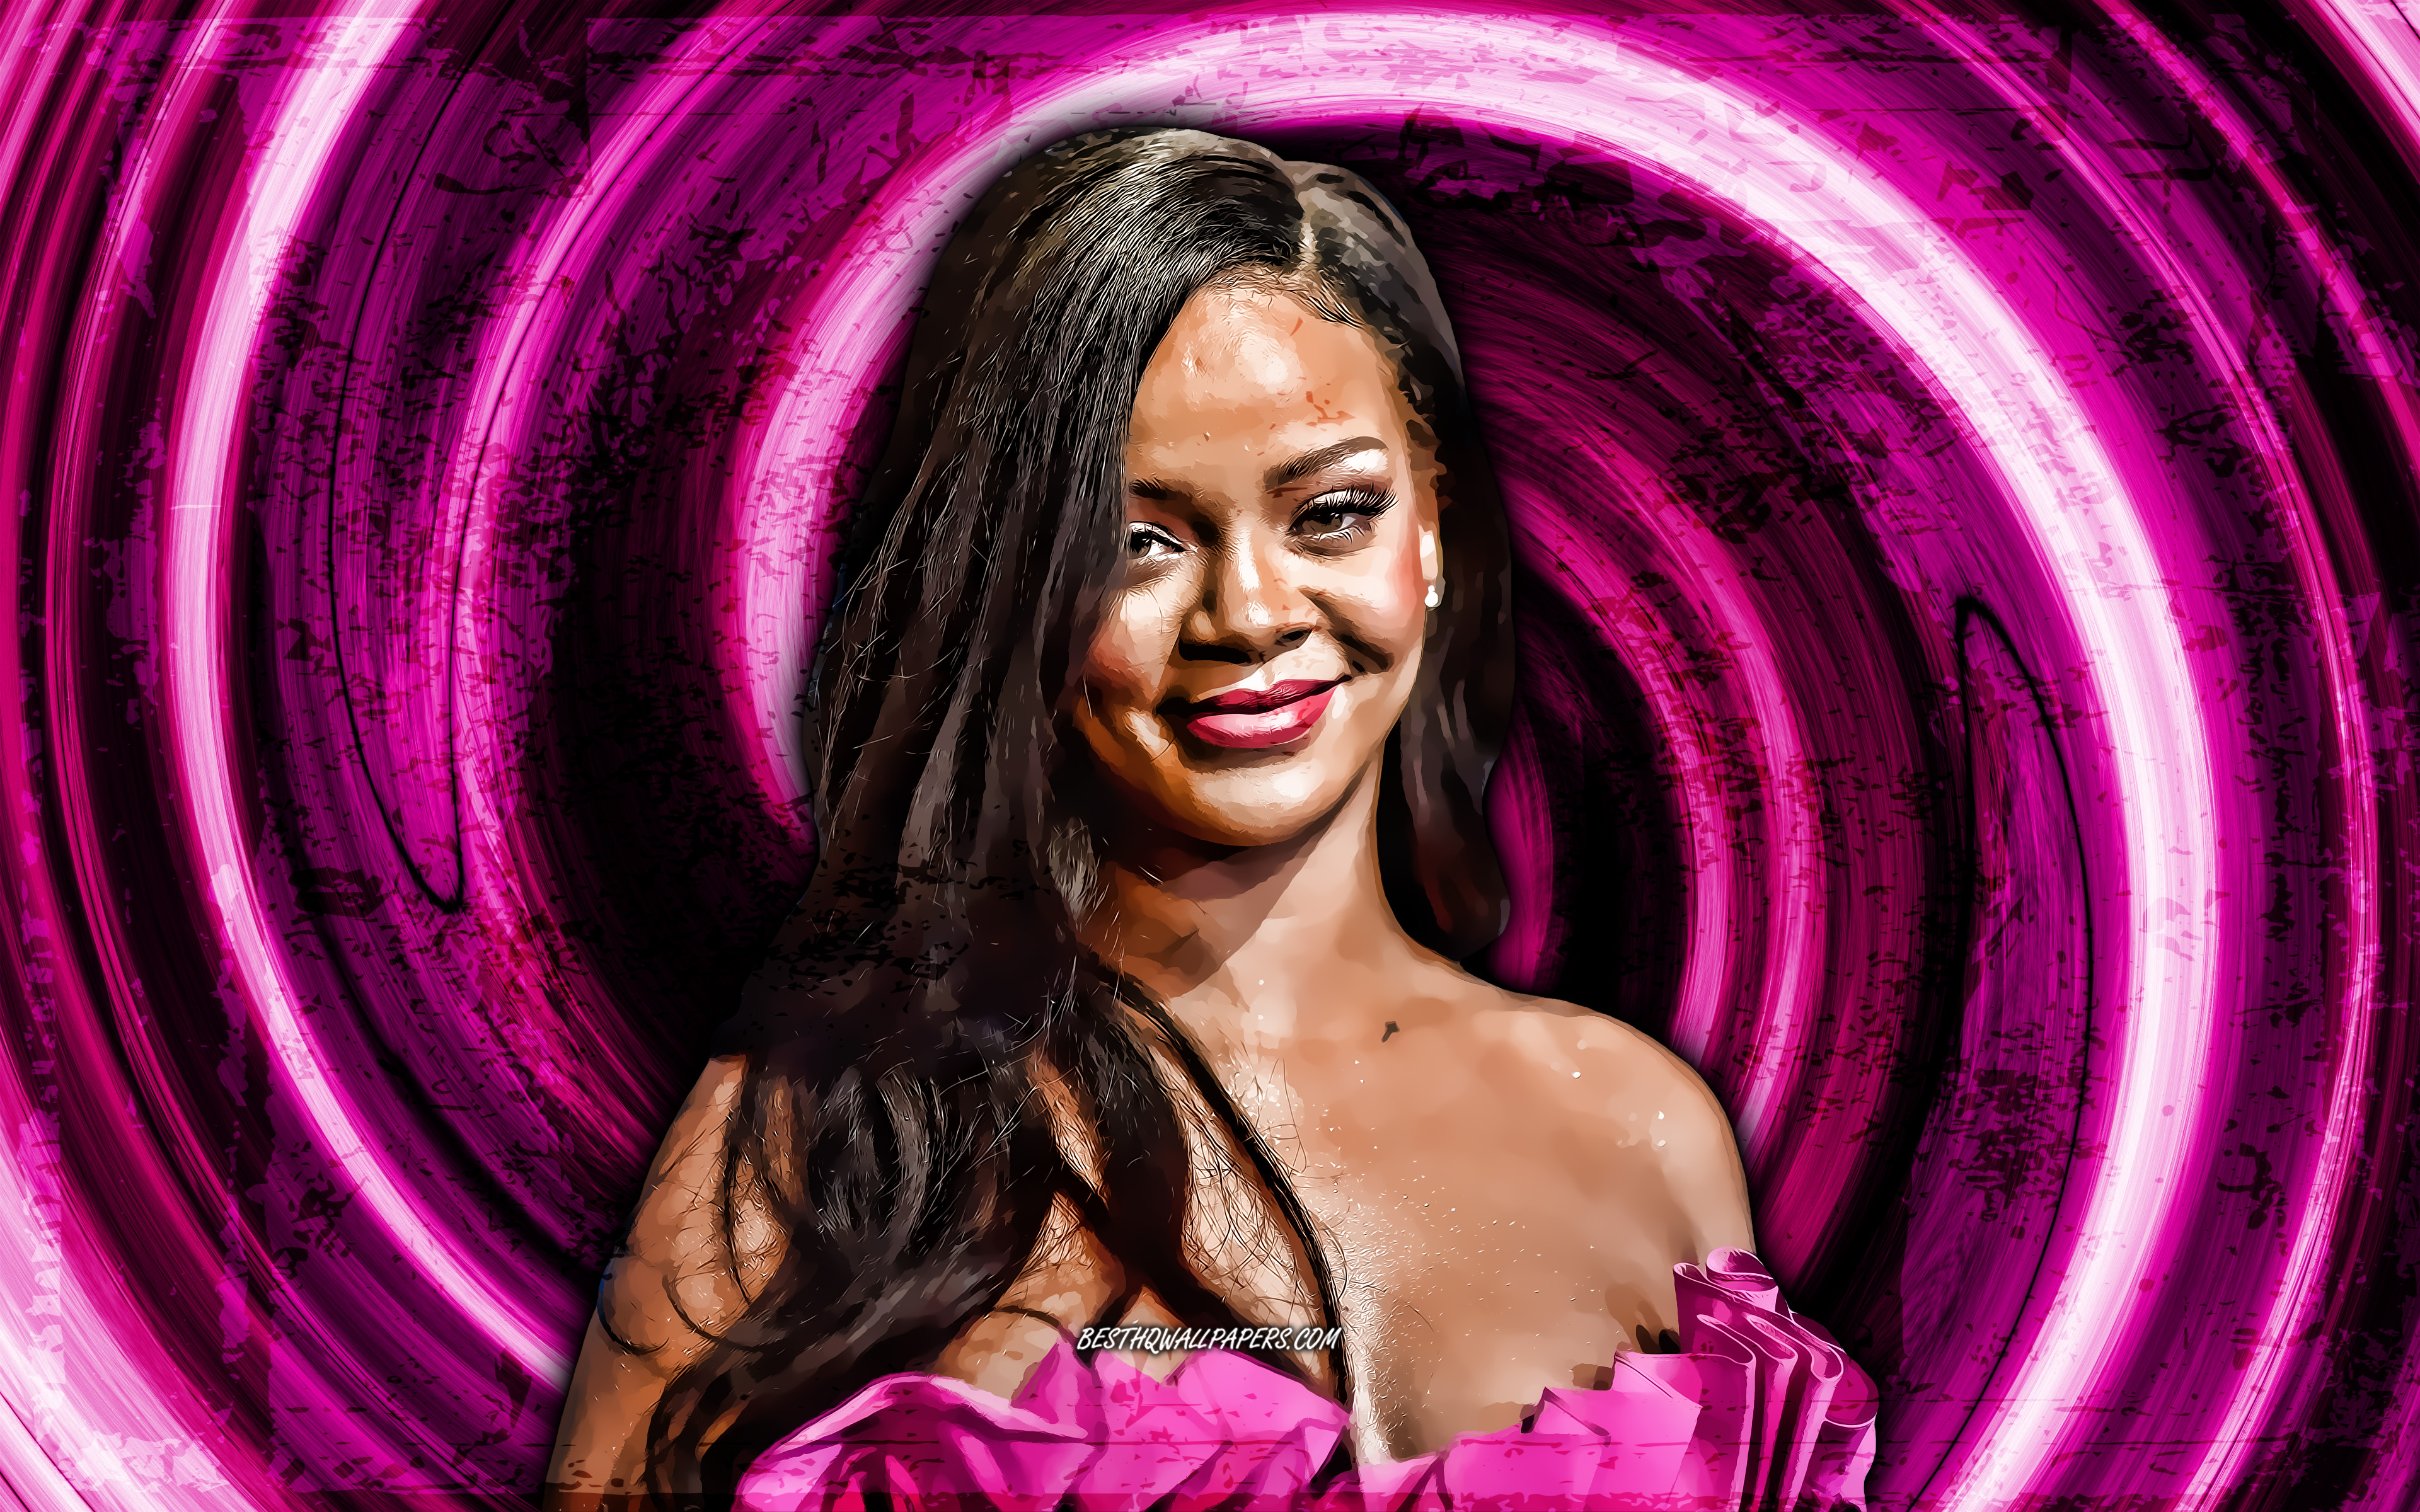 Звезды под музыку. Robyn Rihanna Fenty. Американские музыкальные звезды. Распечатать раскраску лицо Робин Рианна Фенти.